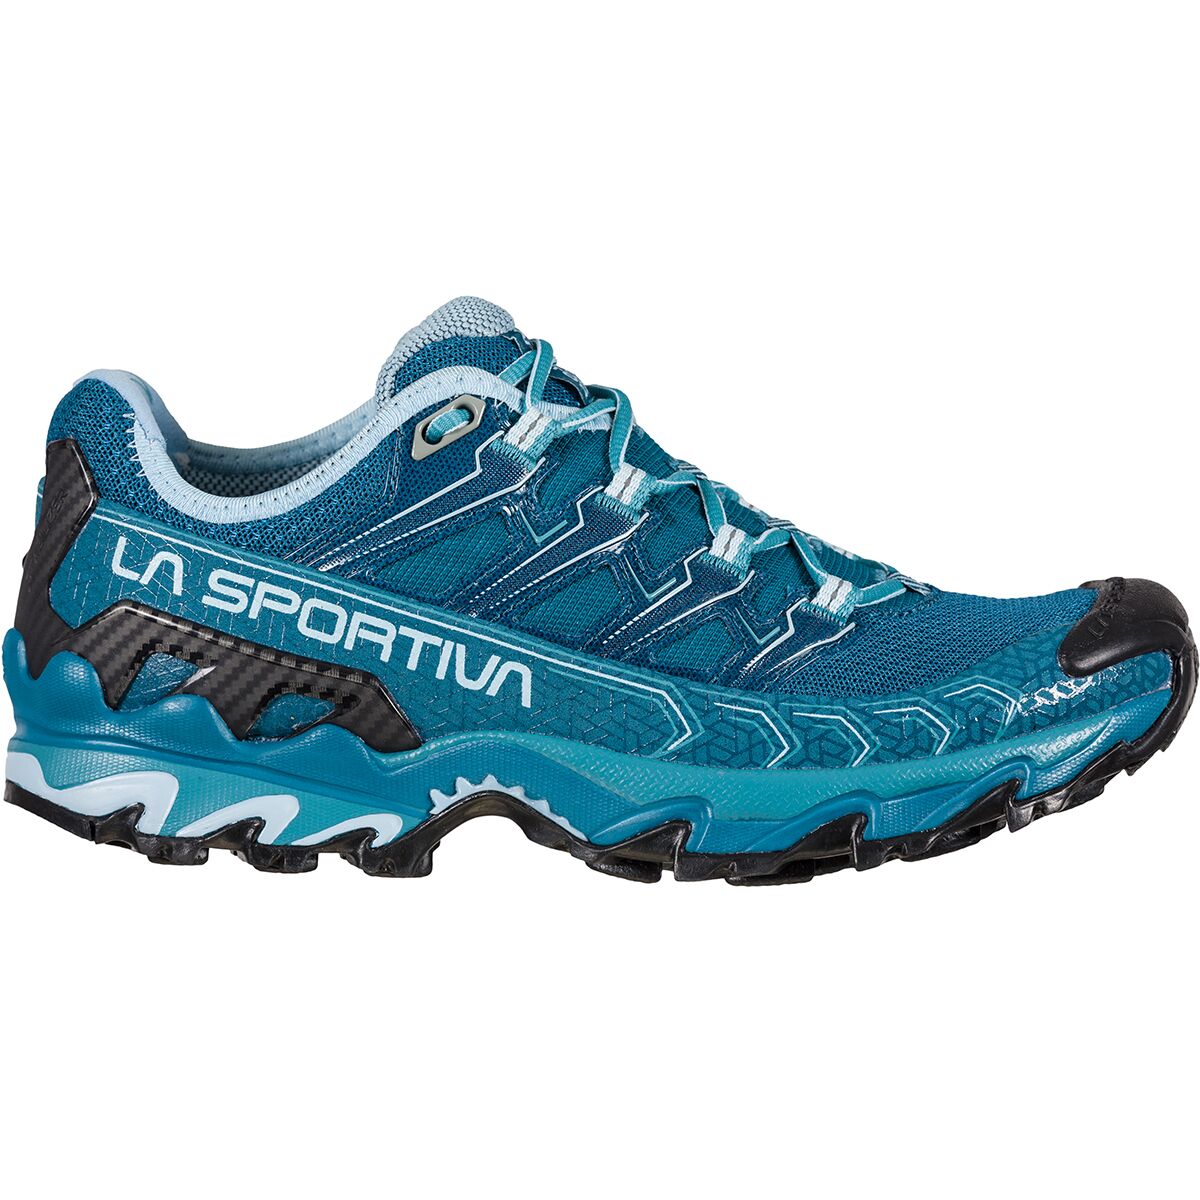 Ultra Raptor II Trail Running Shoe - Women